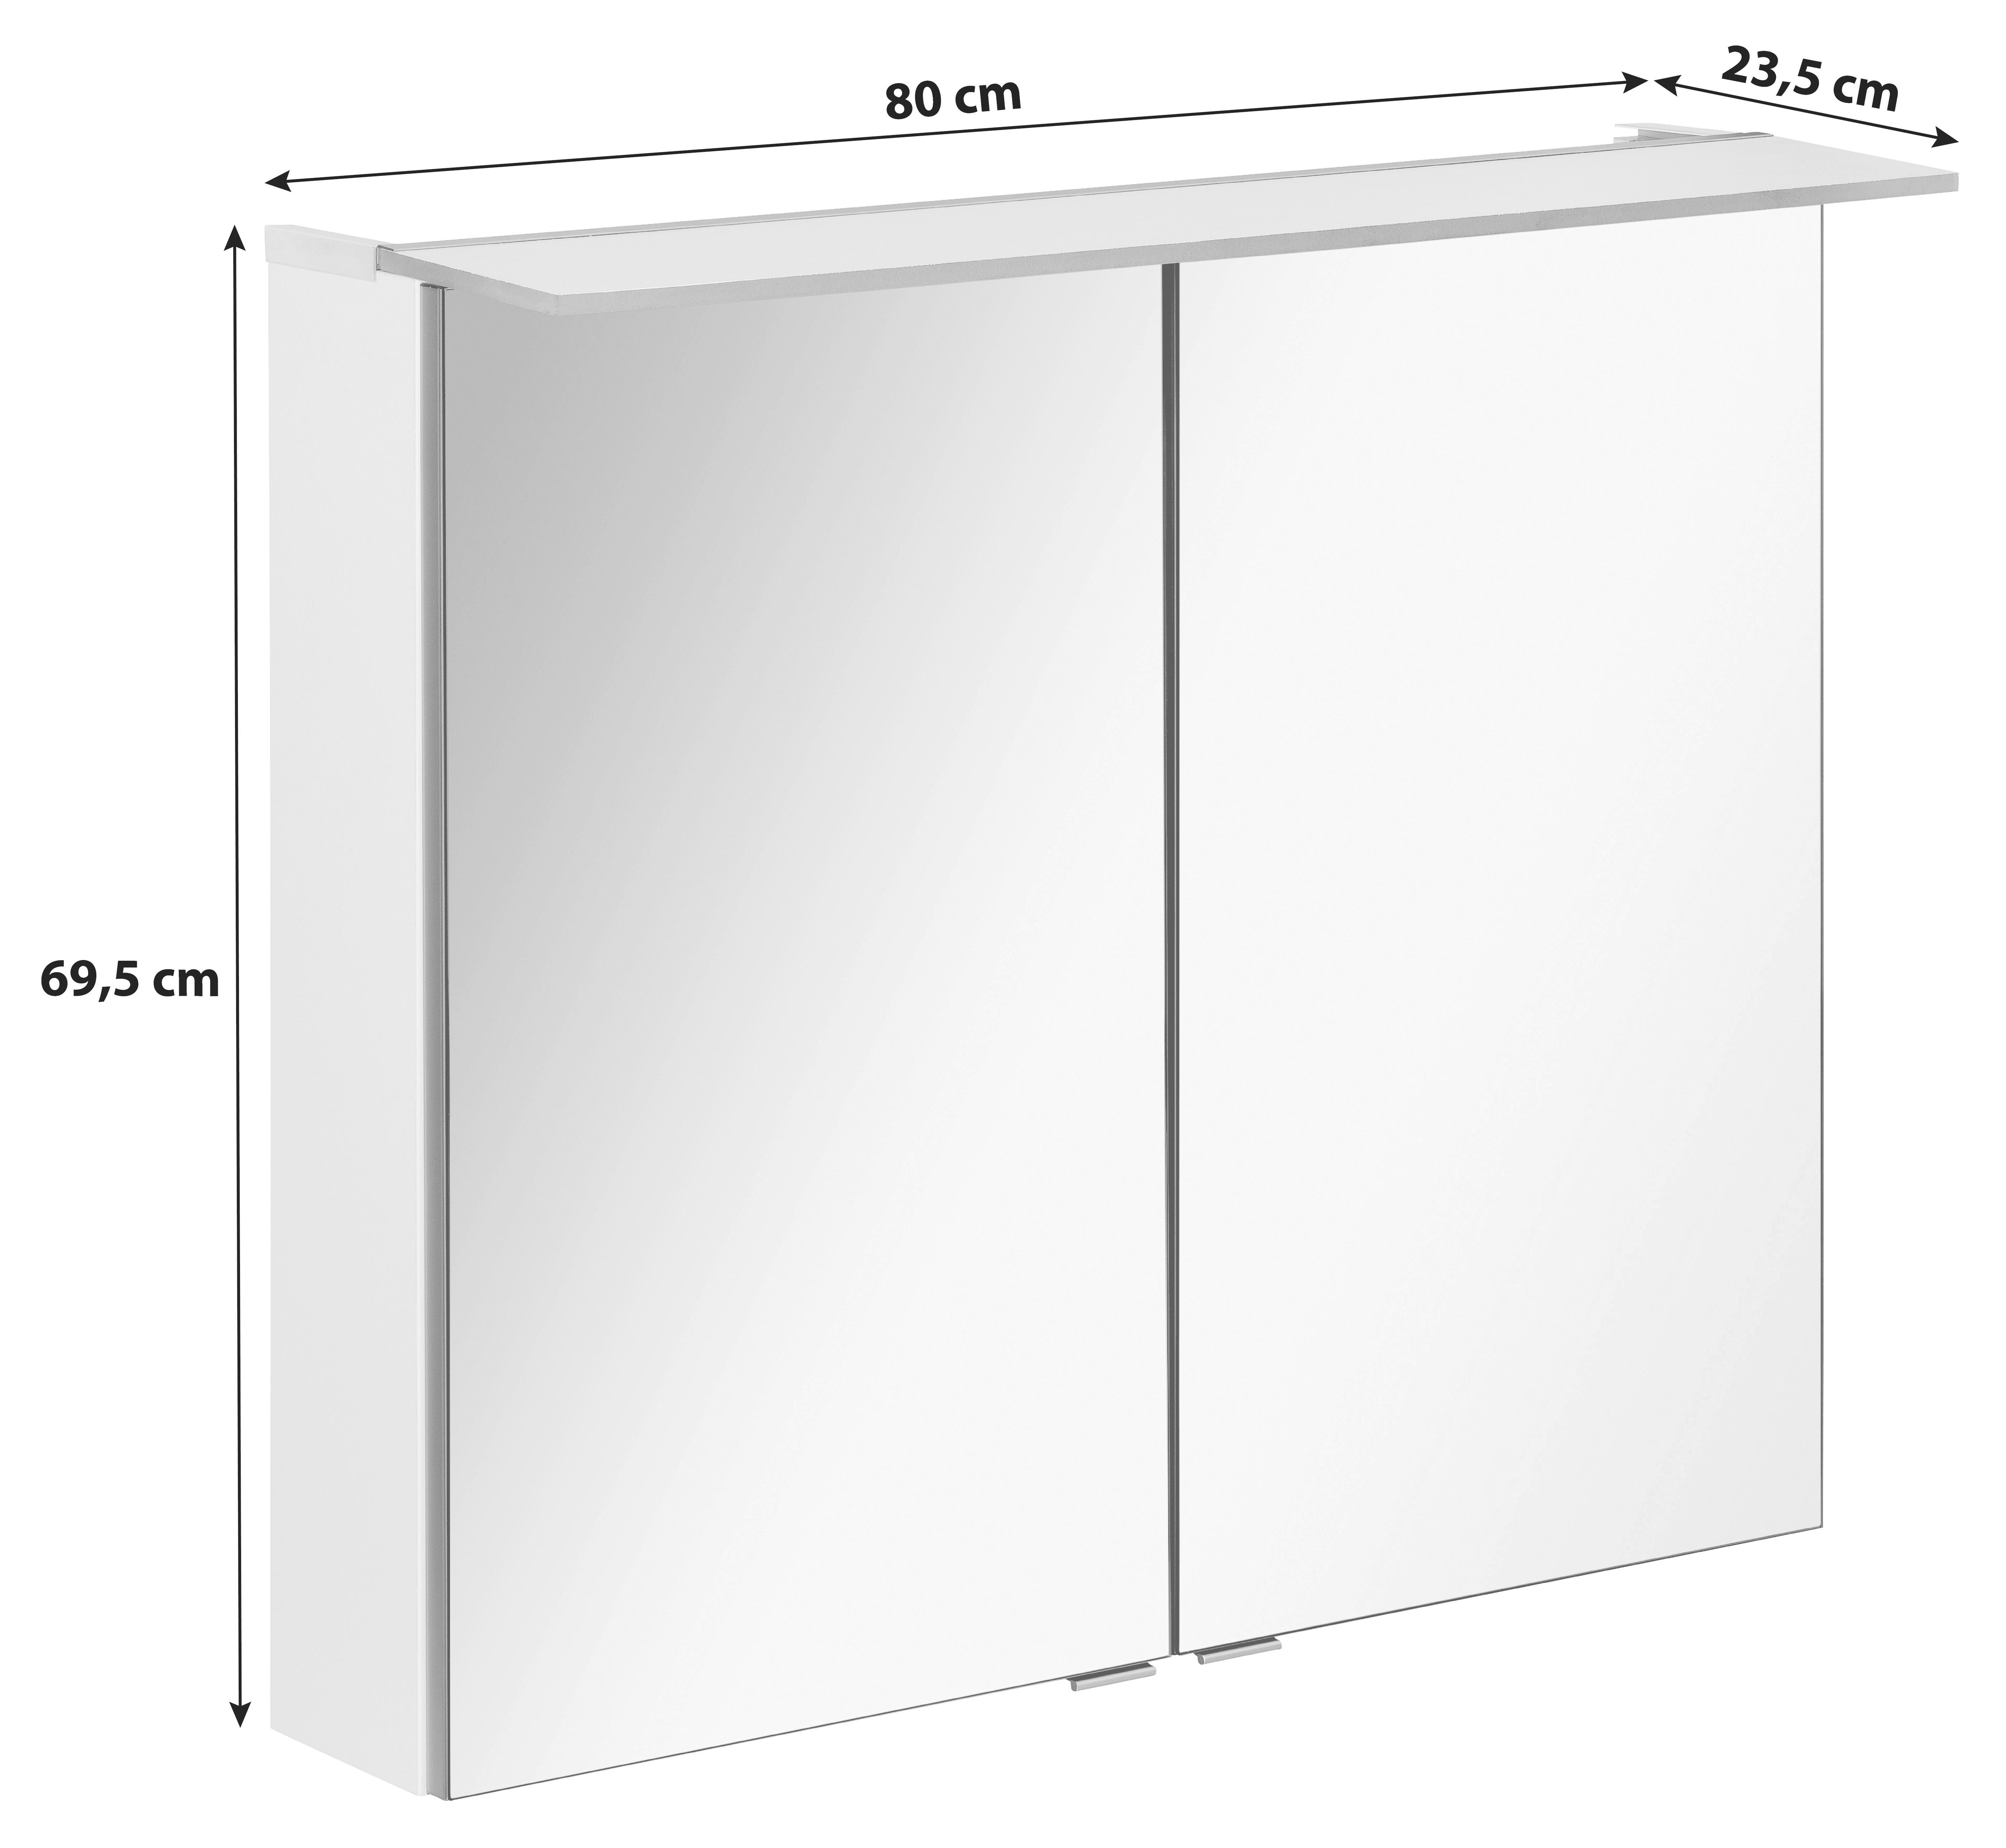 SPIEGELSCHRANK 80/69,5/23,5 cm  - Silberfarben/Weiß, MODERN, Glas/Holzwerkstoff (80/69,5/23,5cm) - MID.YOU